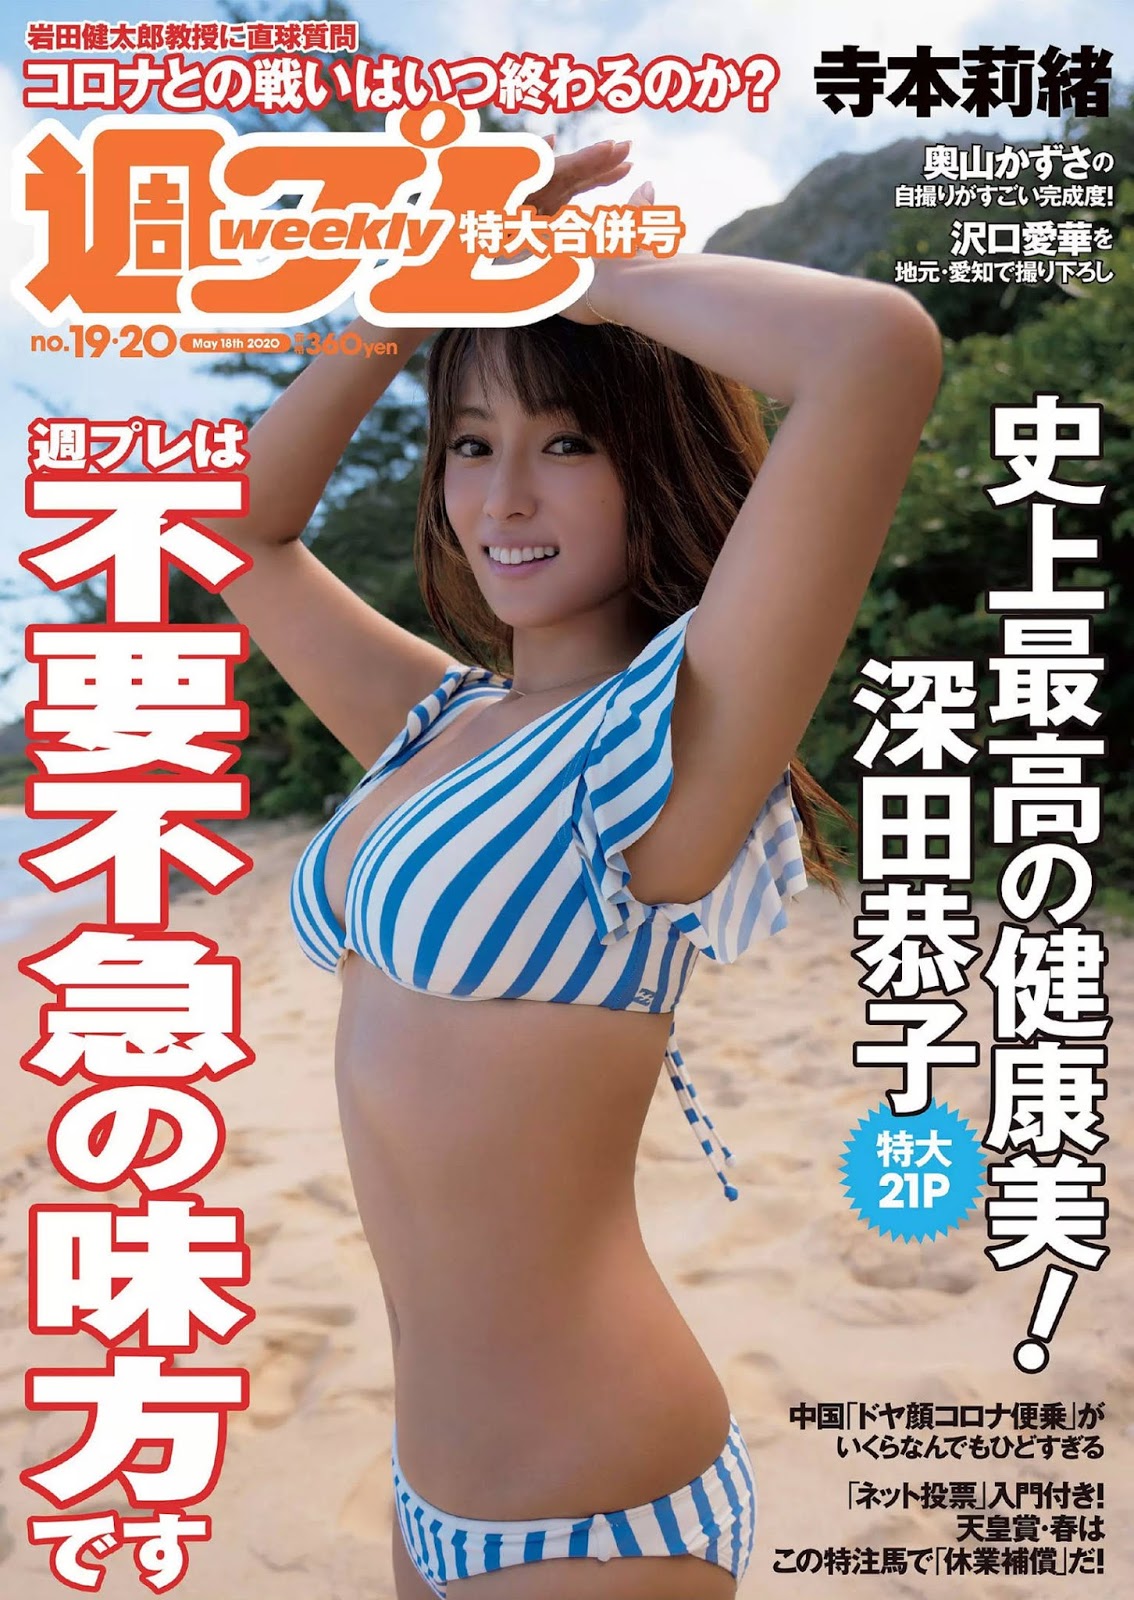 Kyoko Fukada 深田恭子, Weekly Playboy 2020 No.19-20 (週刊プレイボーイ 2020年19-20号)